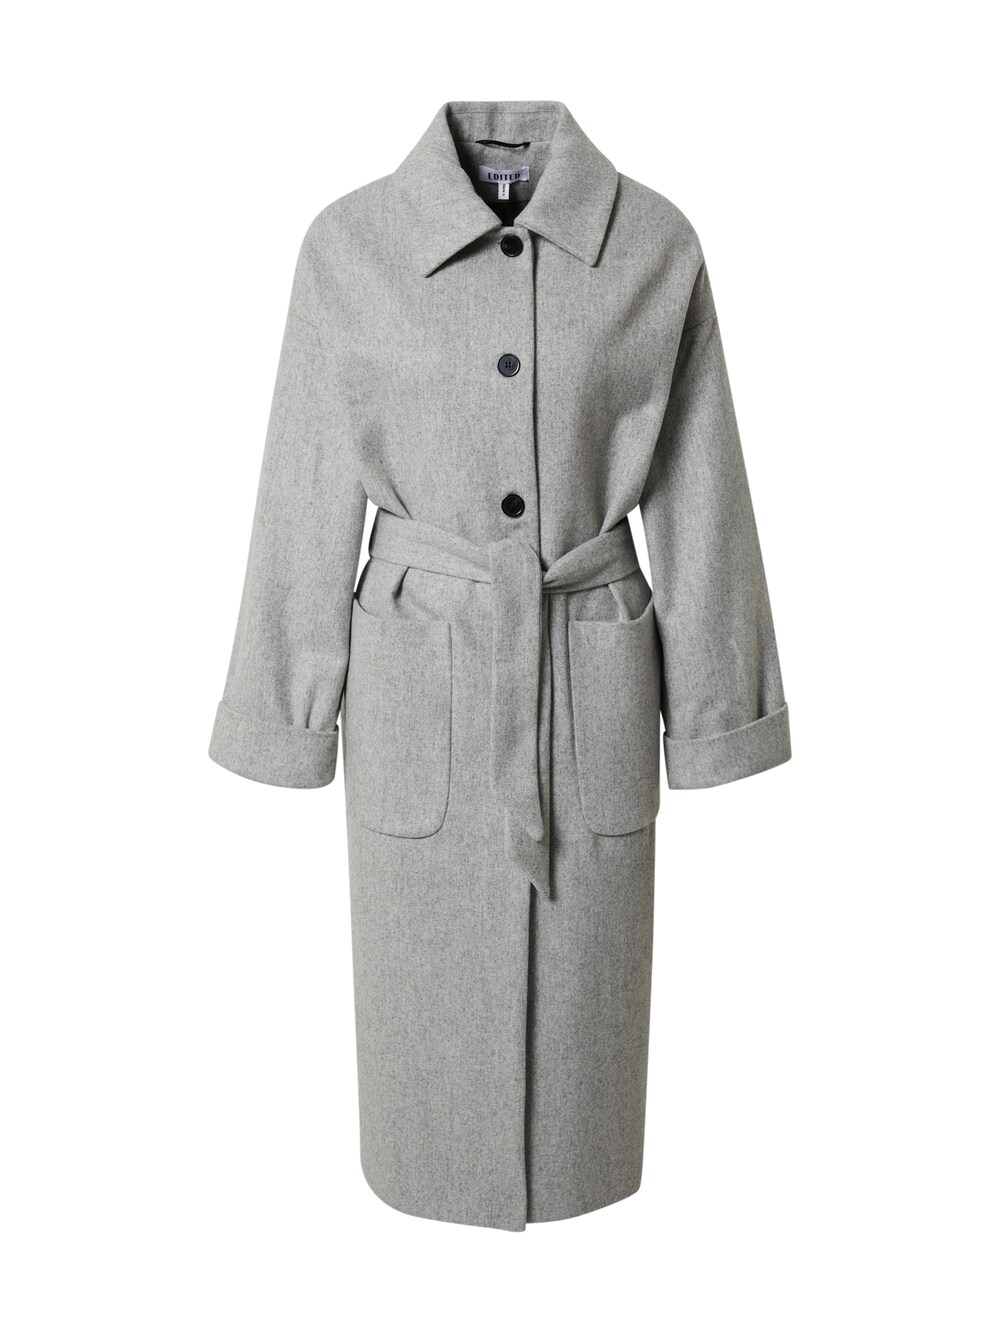 Межсезонное пальто EDITED Tosca, пестрый серый межсезонное пальто edited ekaterina пестрый серый